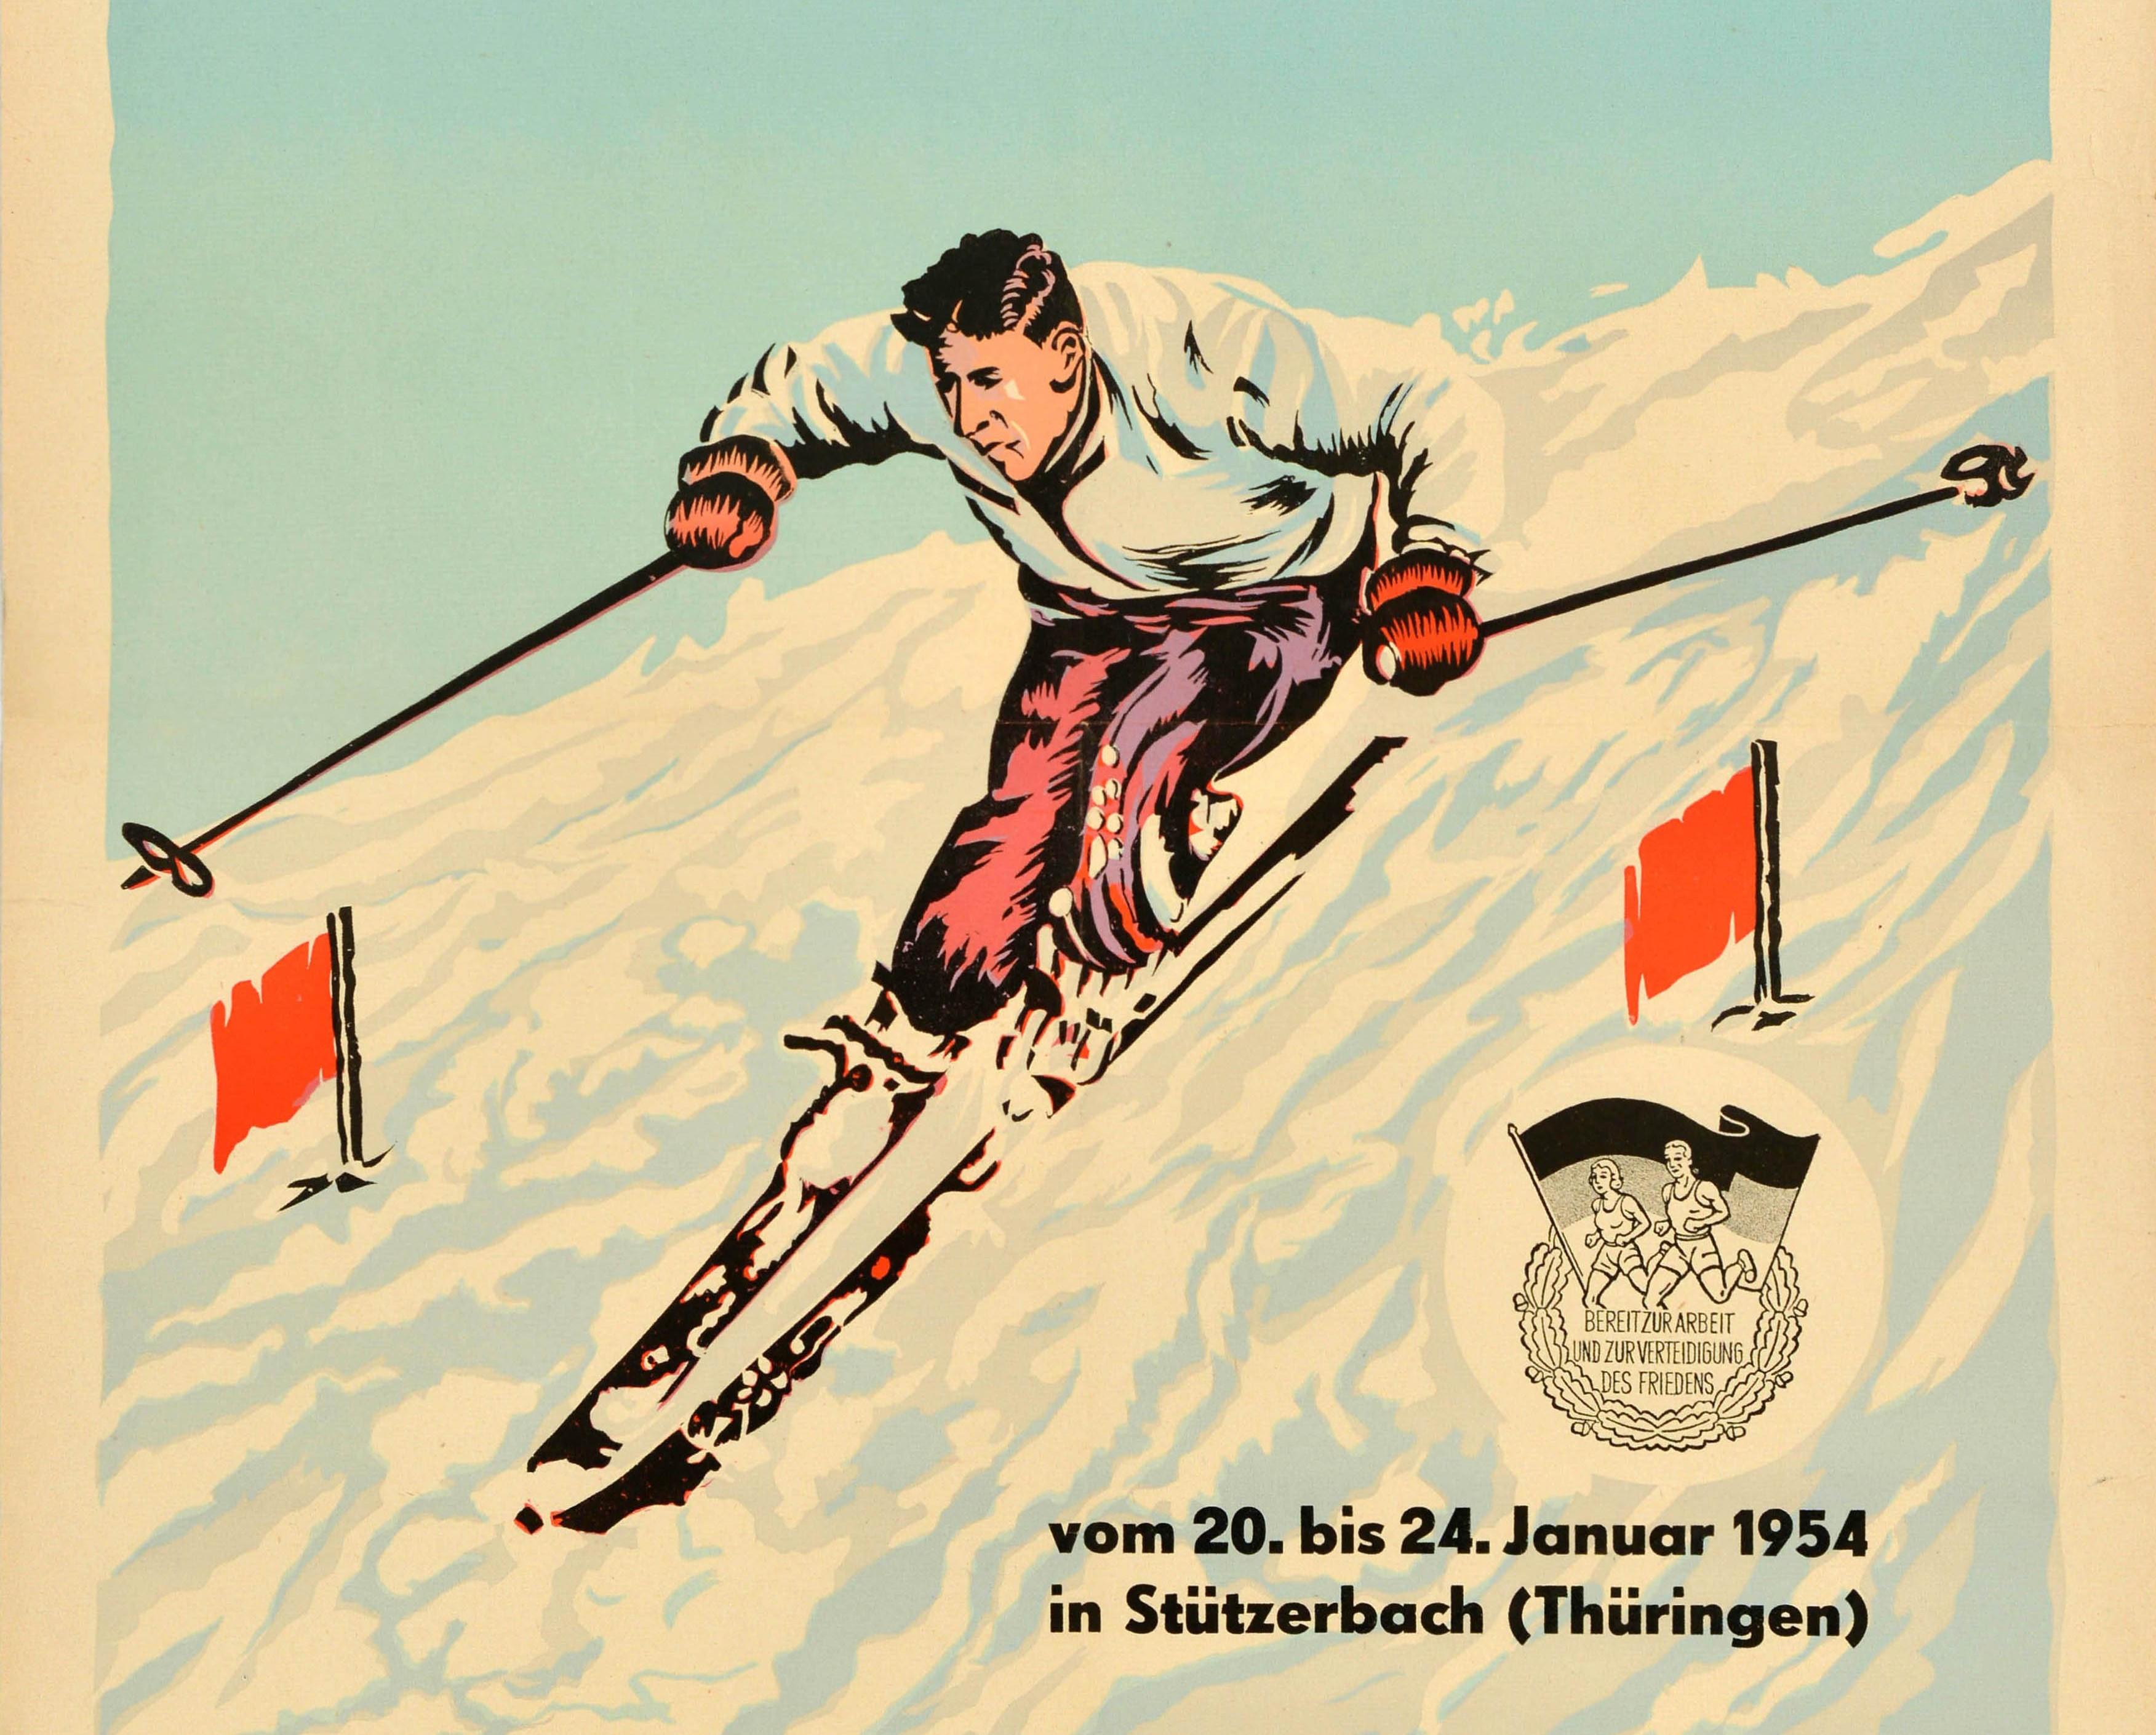 Original Vintage Sport Veranstaltungsplakat für die 2. Wintersport Meisterschaften der Cottbus Frankfurt Potsdam vom 20-24 Januar 1954 in Stutzerbach Thüringen. Dynamische Illustration eines Slalomfahrers, der zwischen zwei roten Fahnen den Hang